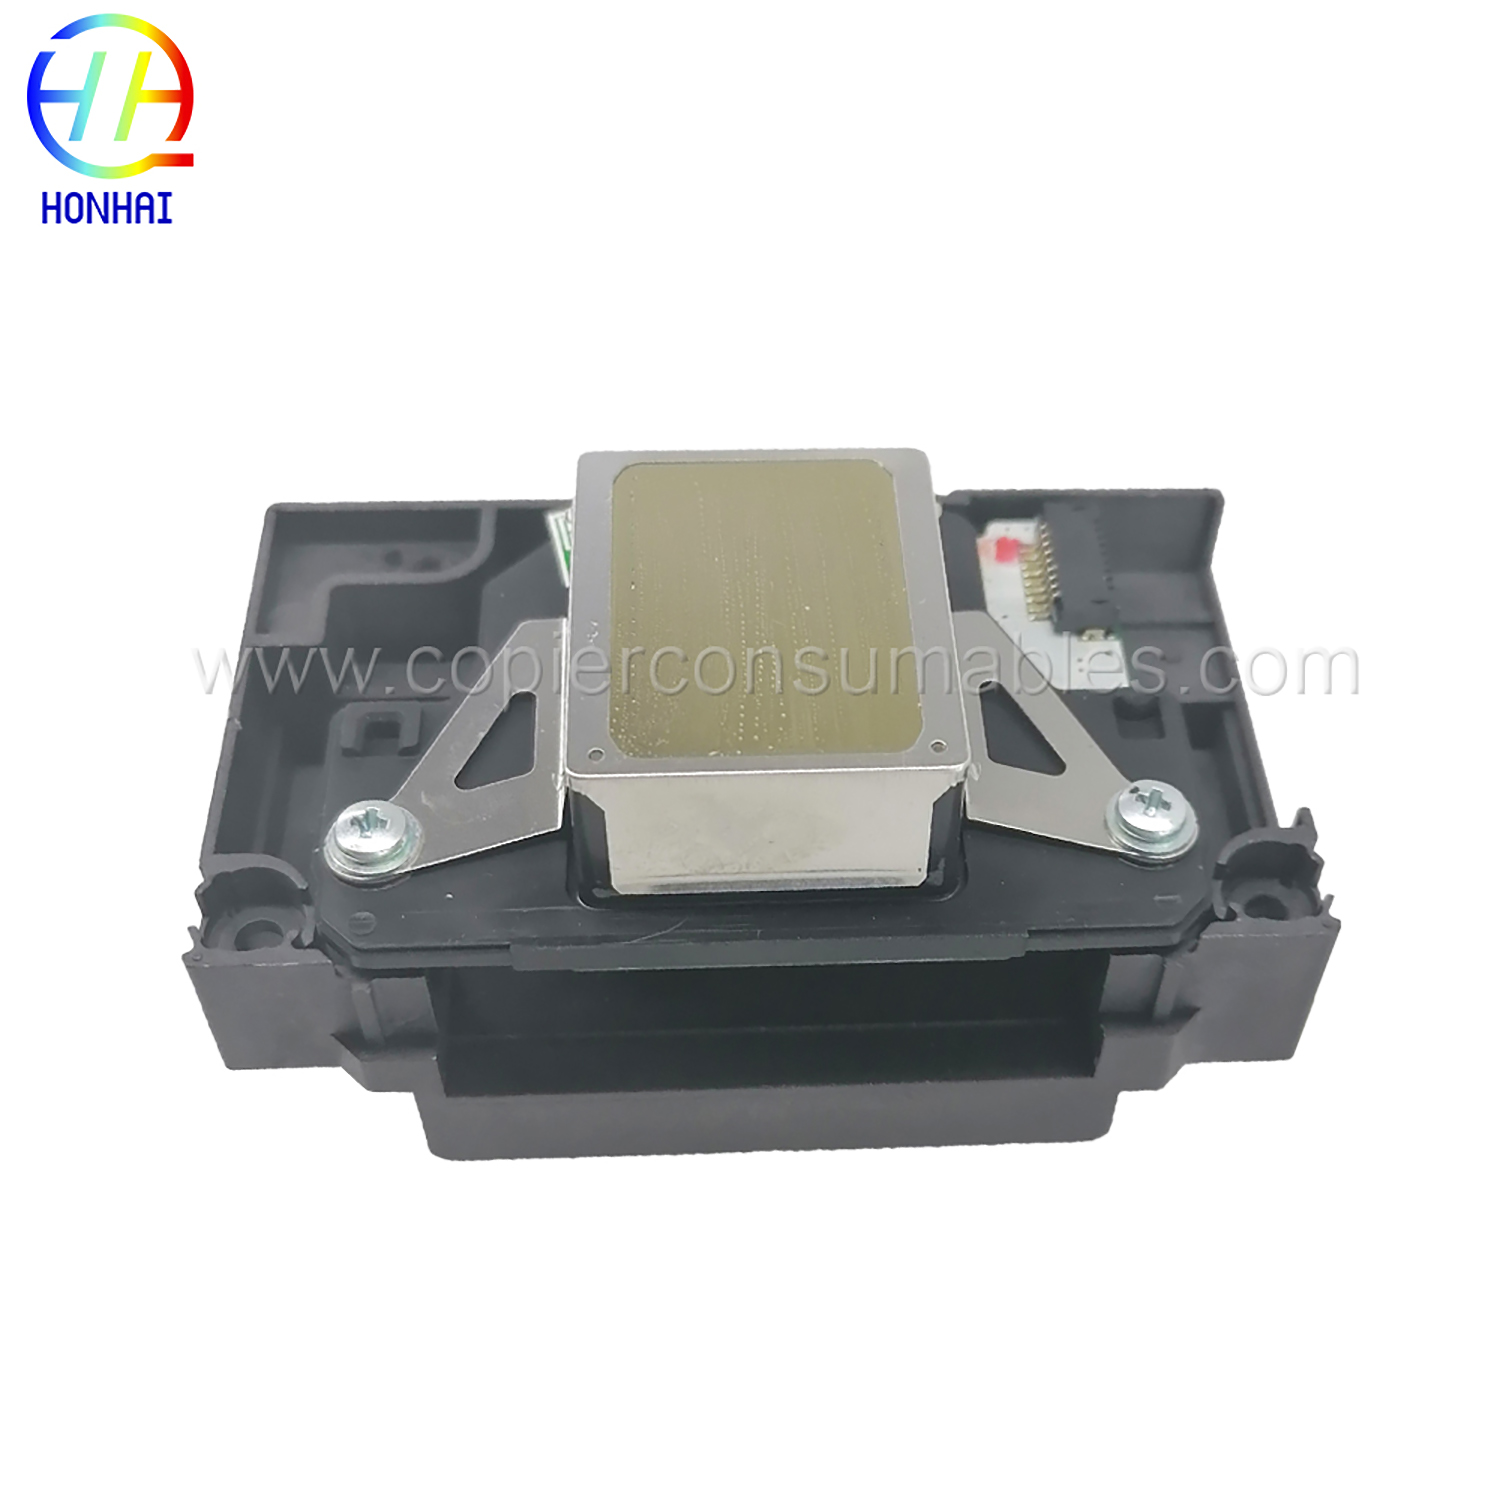 Głowica drukująca kompatybilna z Epson L1800 1410 1430 1500W (5) Więcej